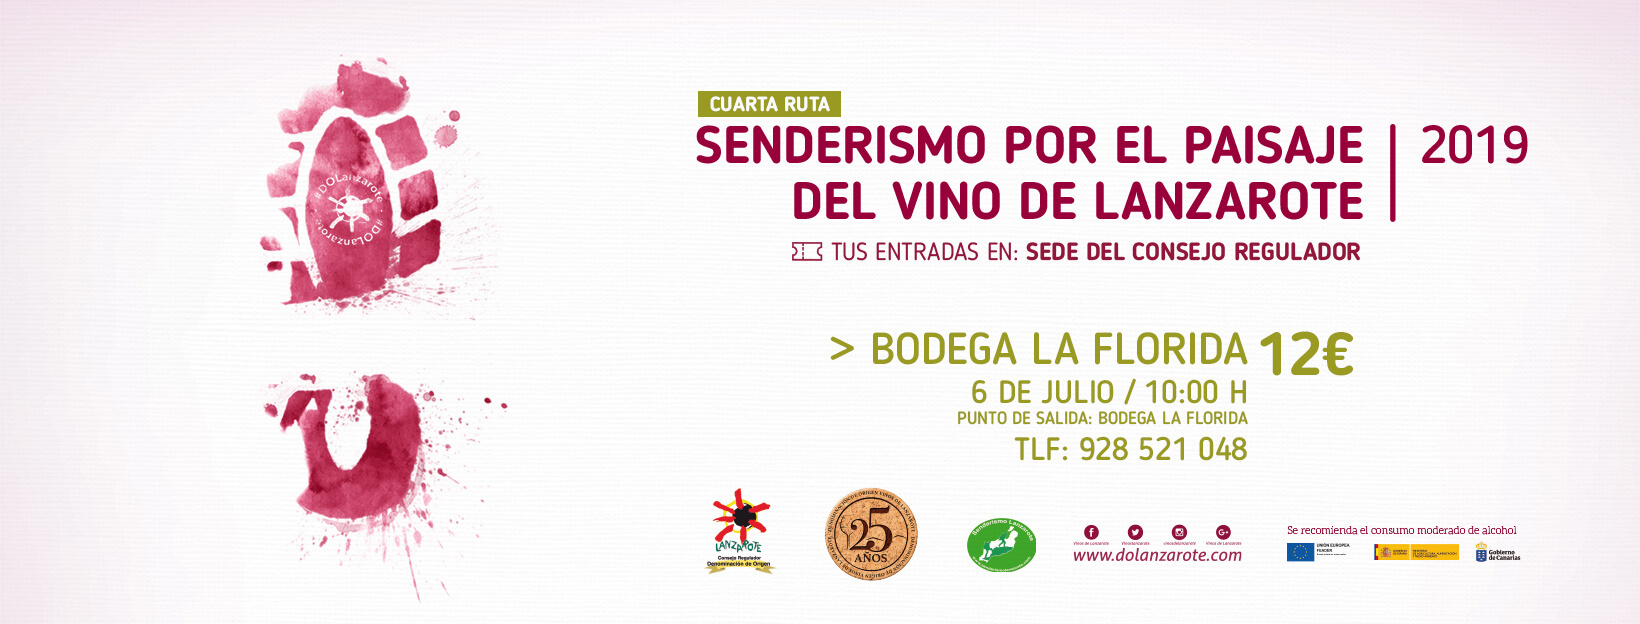 Senderismo vinos de Lanzarote a Bodega La Florida julio 2019